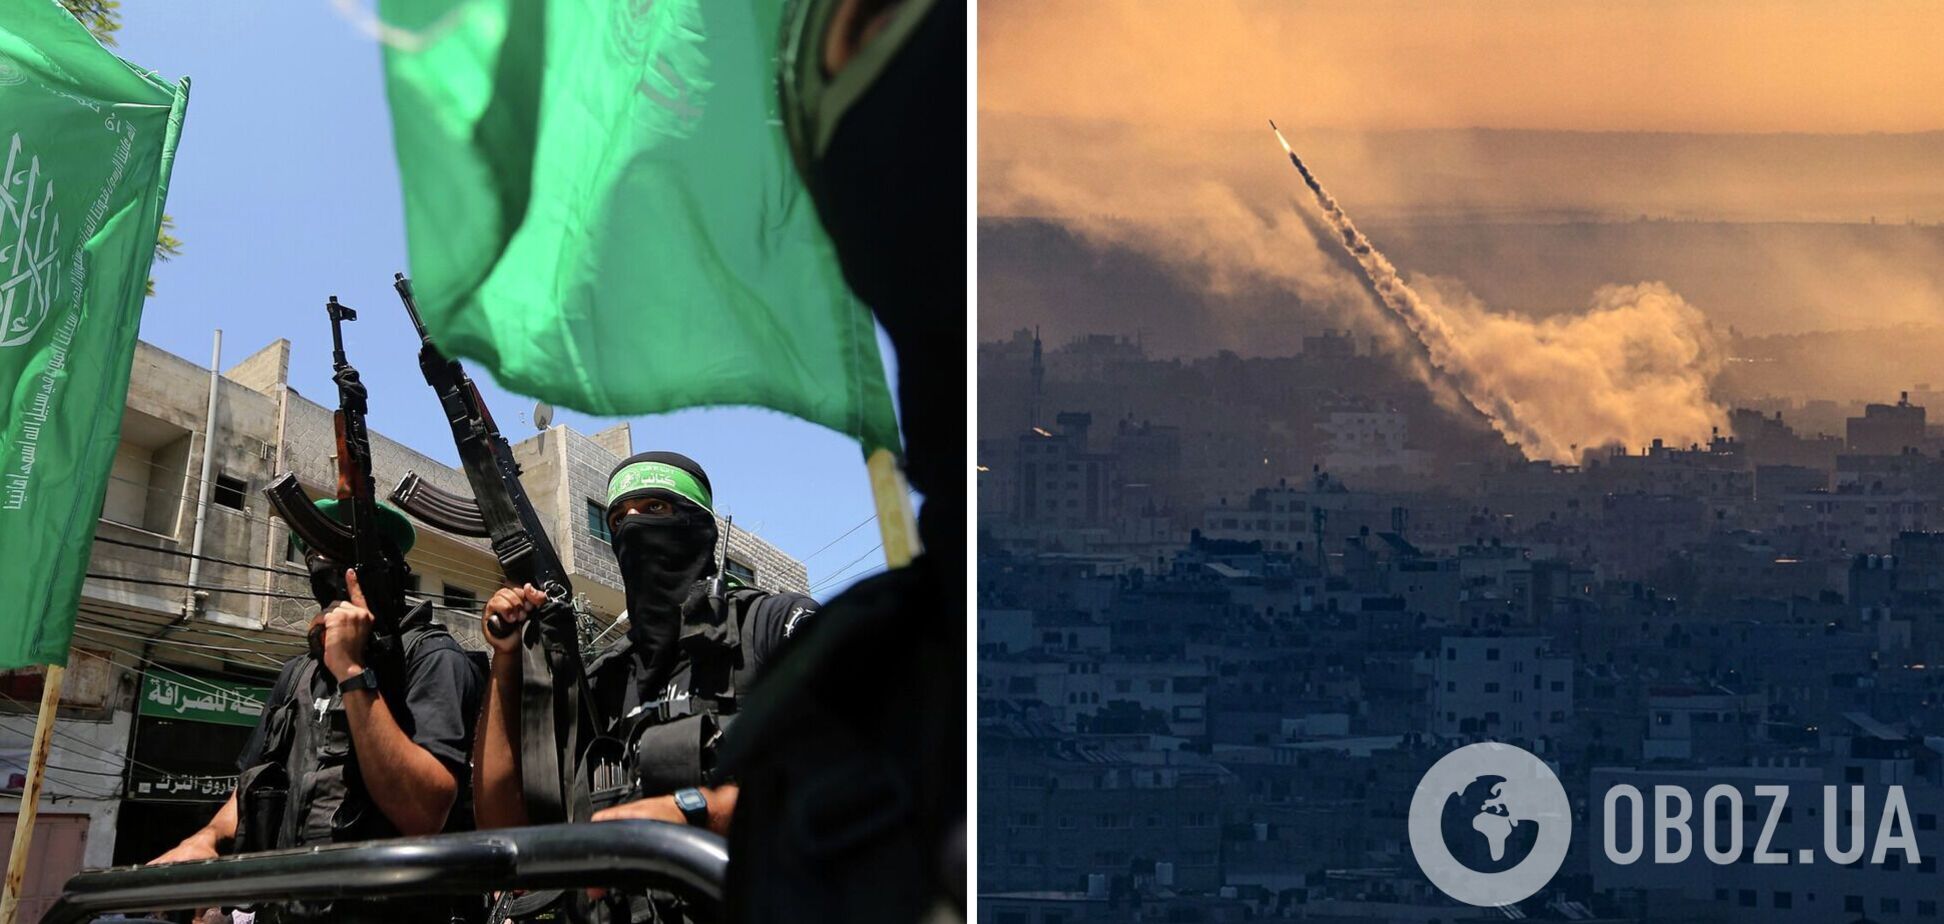 ХАМАС согласился на предложенный США план перемирия – СМИ